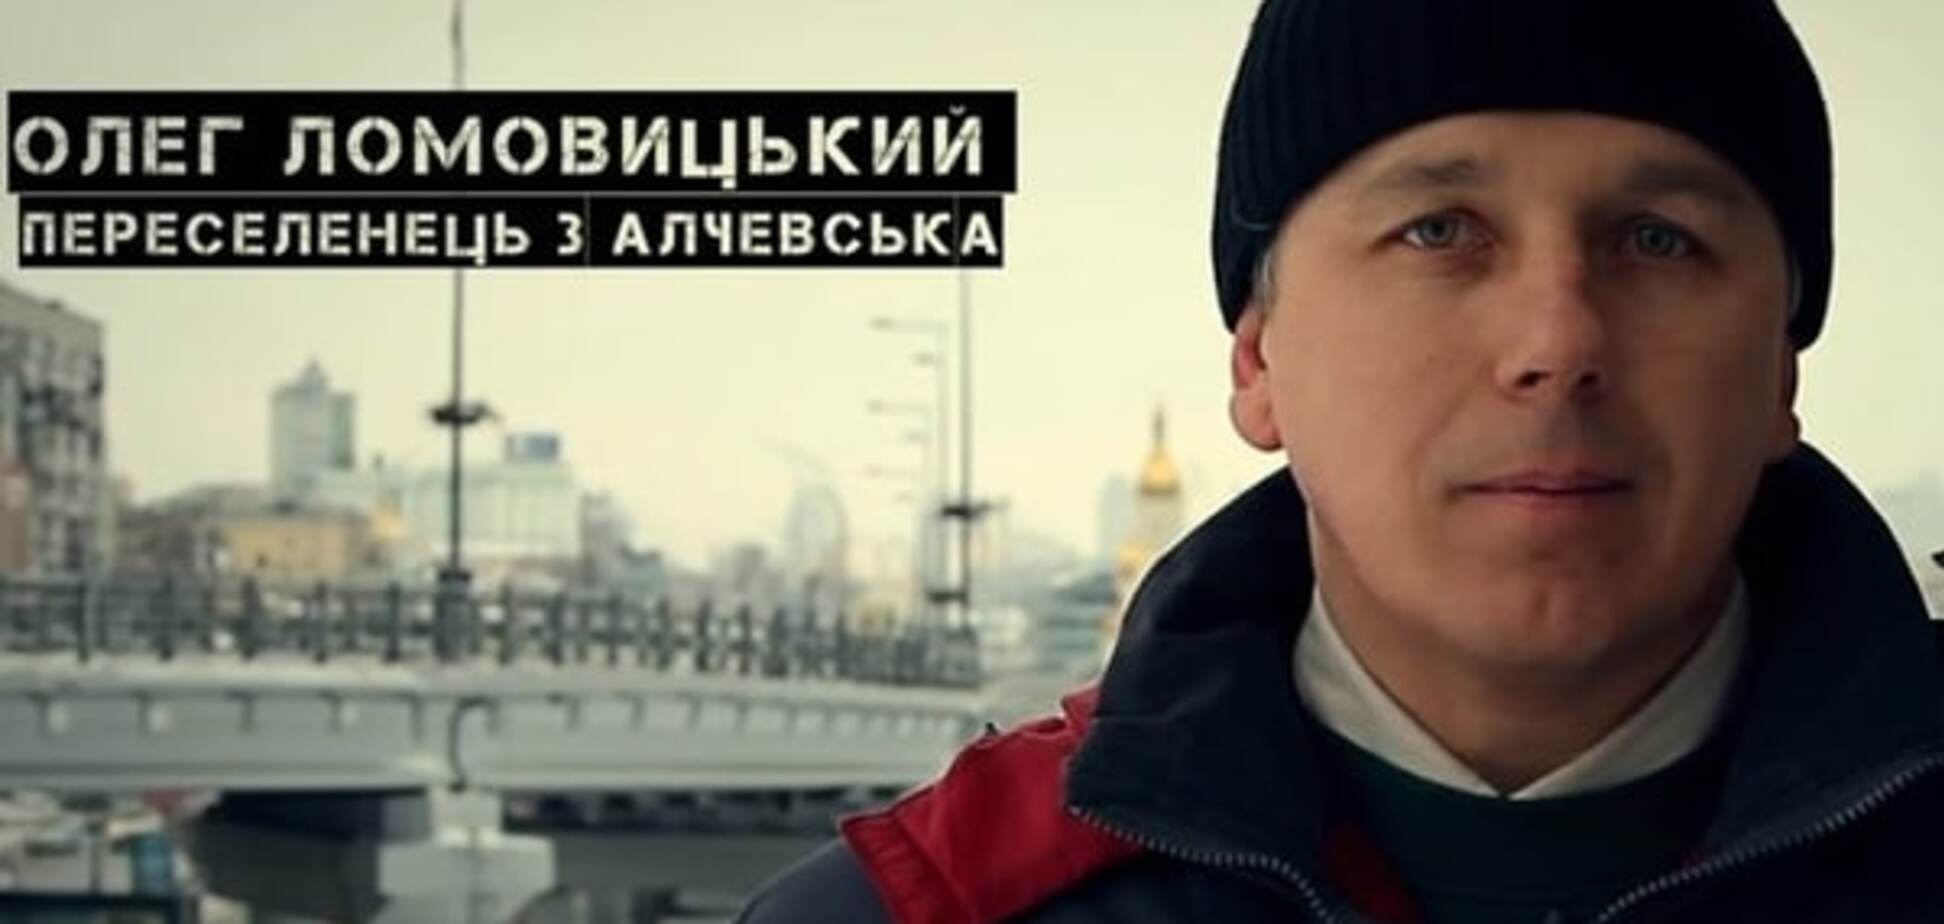 Социальная реклама о беженцах с Донбасса получила награду от ООН: опубликовано видео